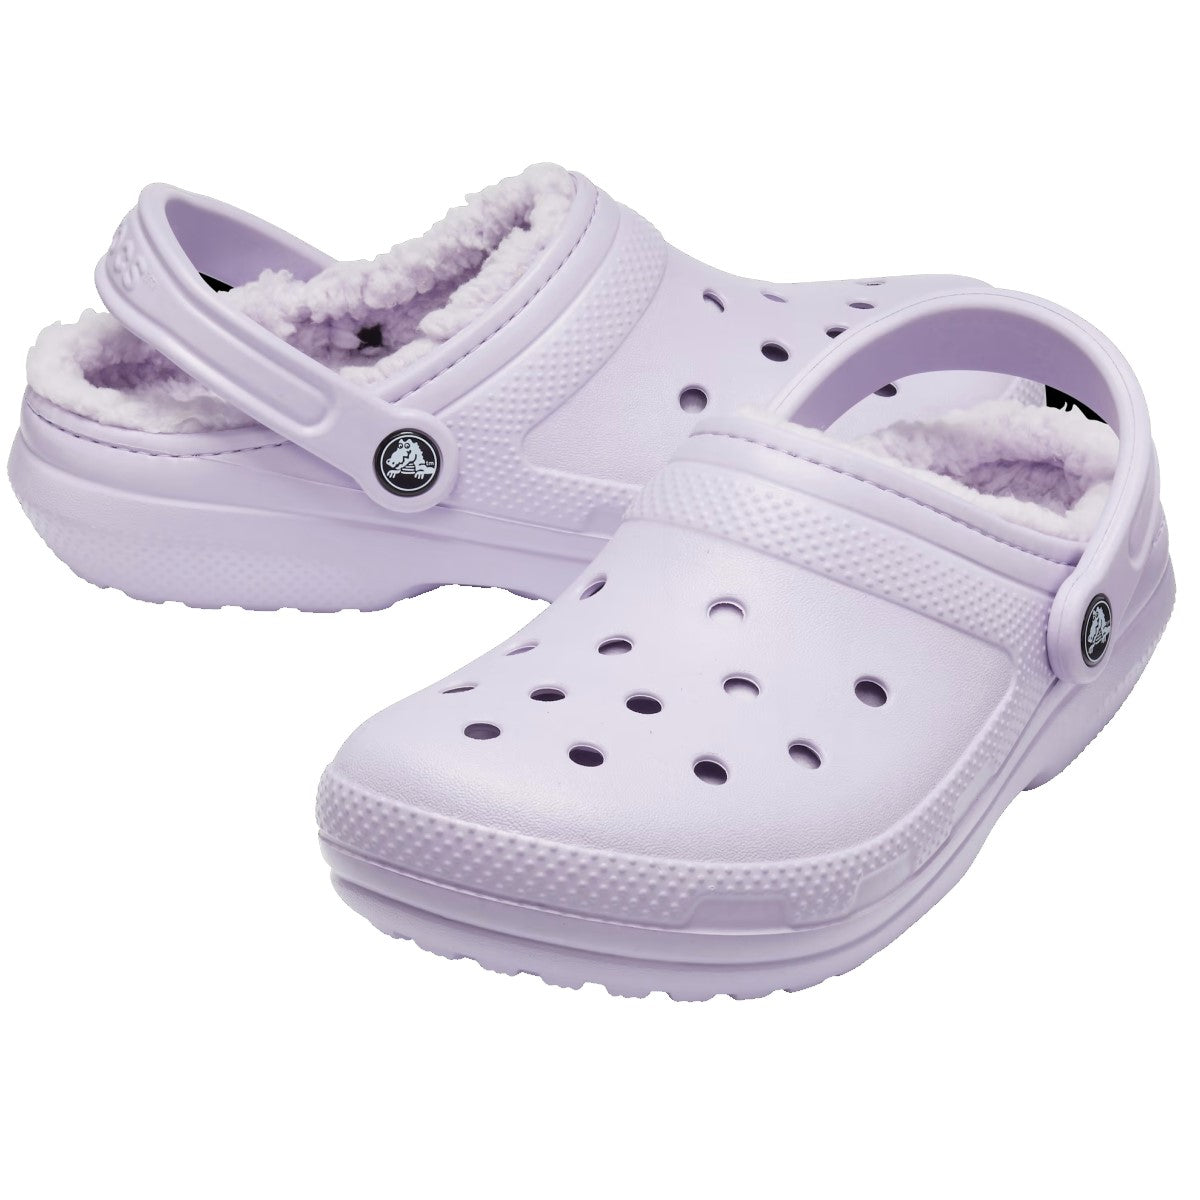 Crocs Classic Lined Clogs Women's (Lavender)